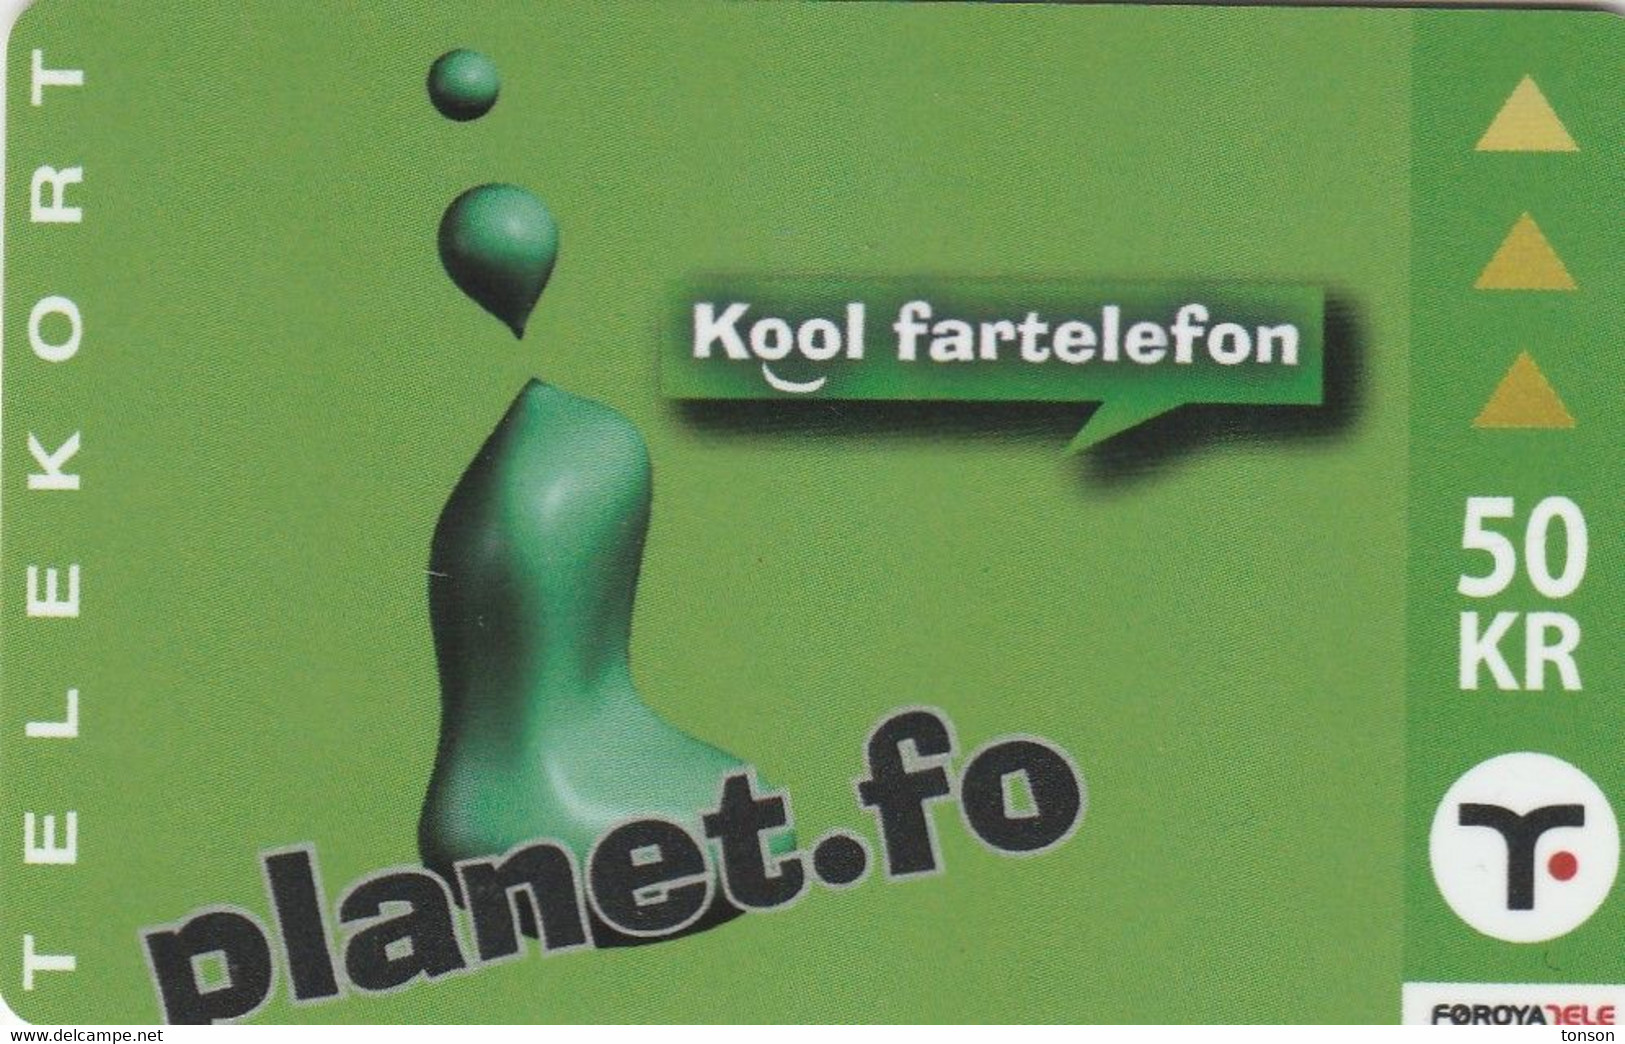 Faroe Islands, OR-003, 50 Kr ,  Planet.fo, Kool Fartelefon, 2 Scans. - Islas Faroe